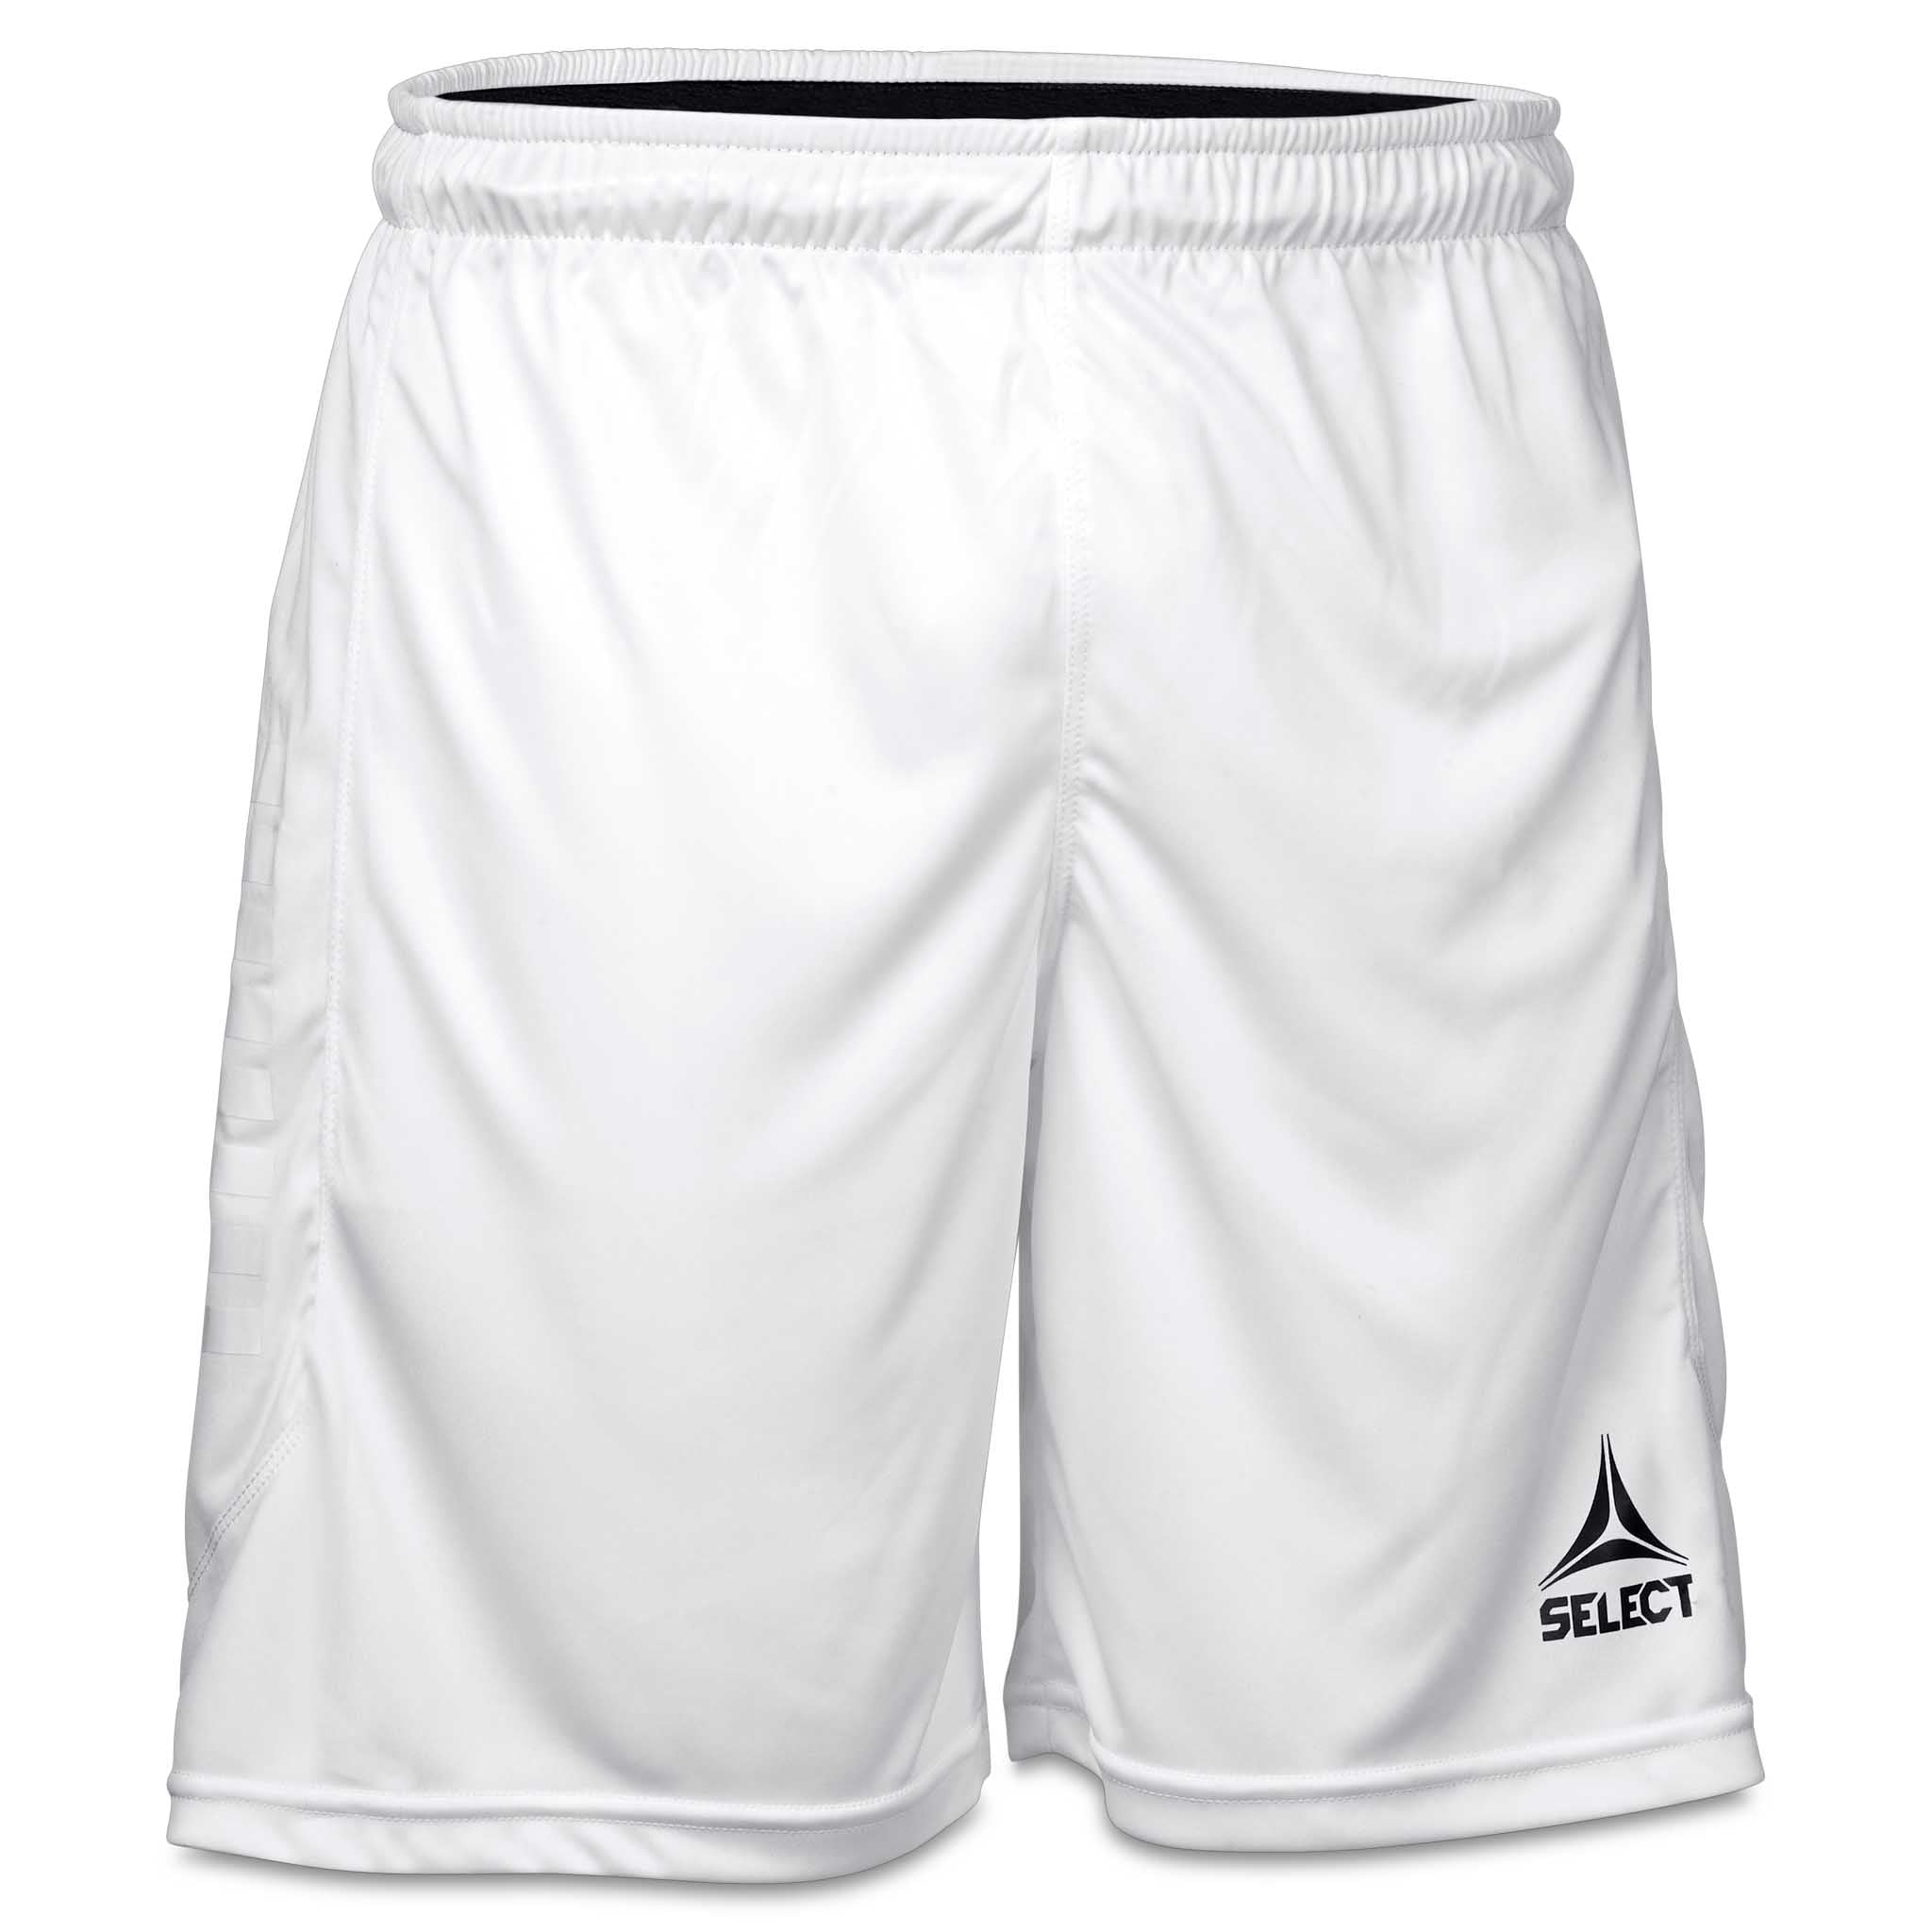 Monaco shorts #färg_white/white